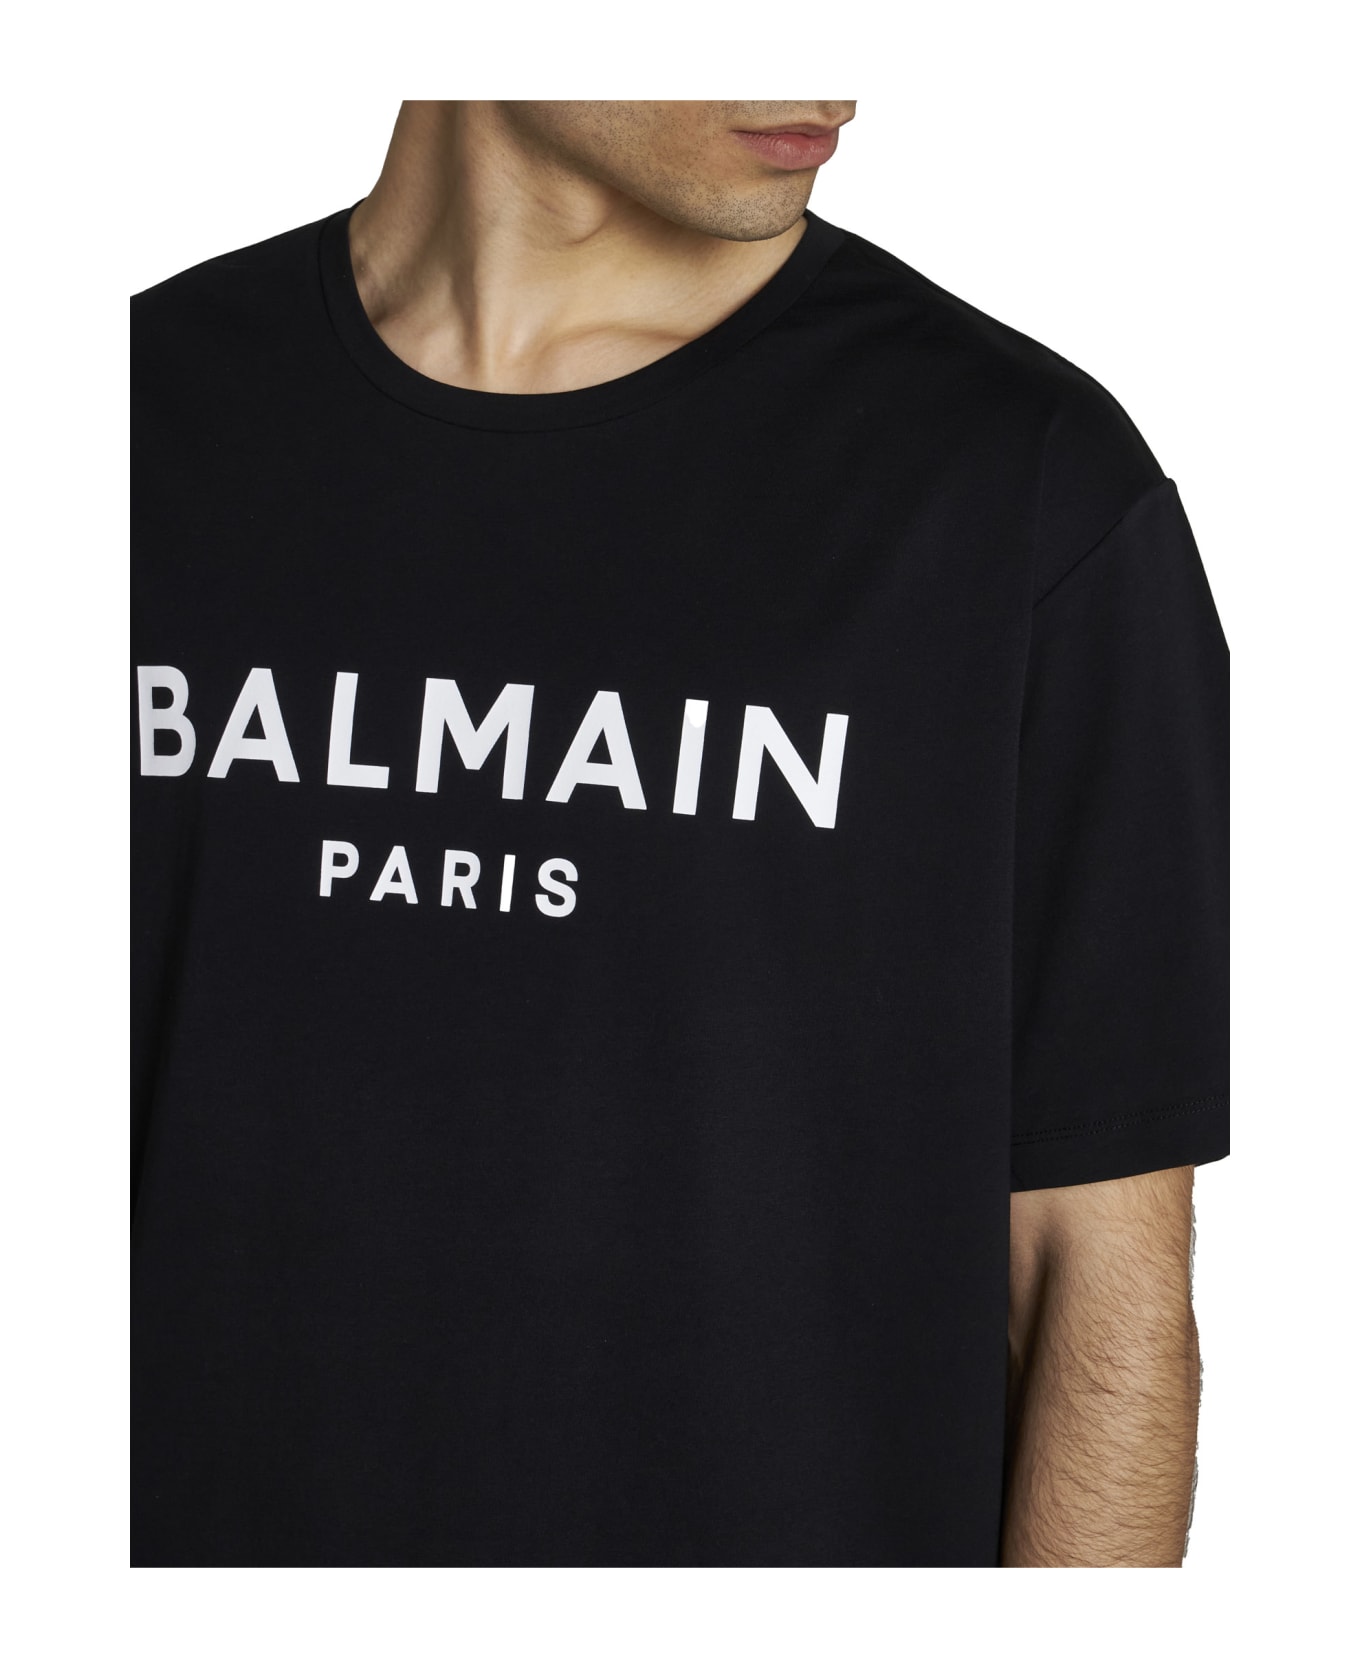 Balmain Printed T-shirt - Black シャツ